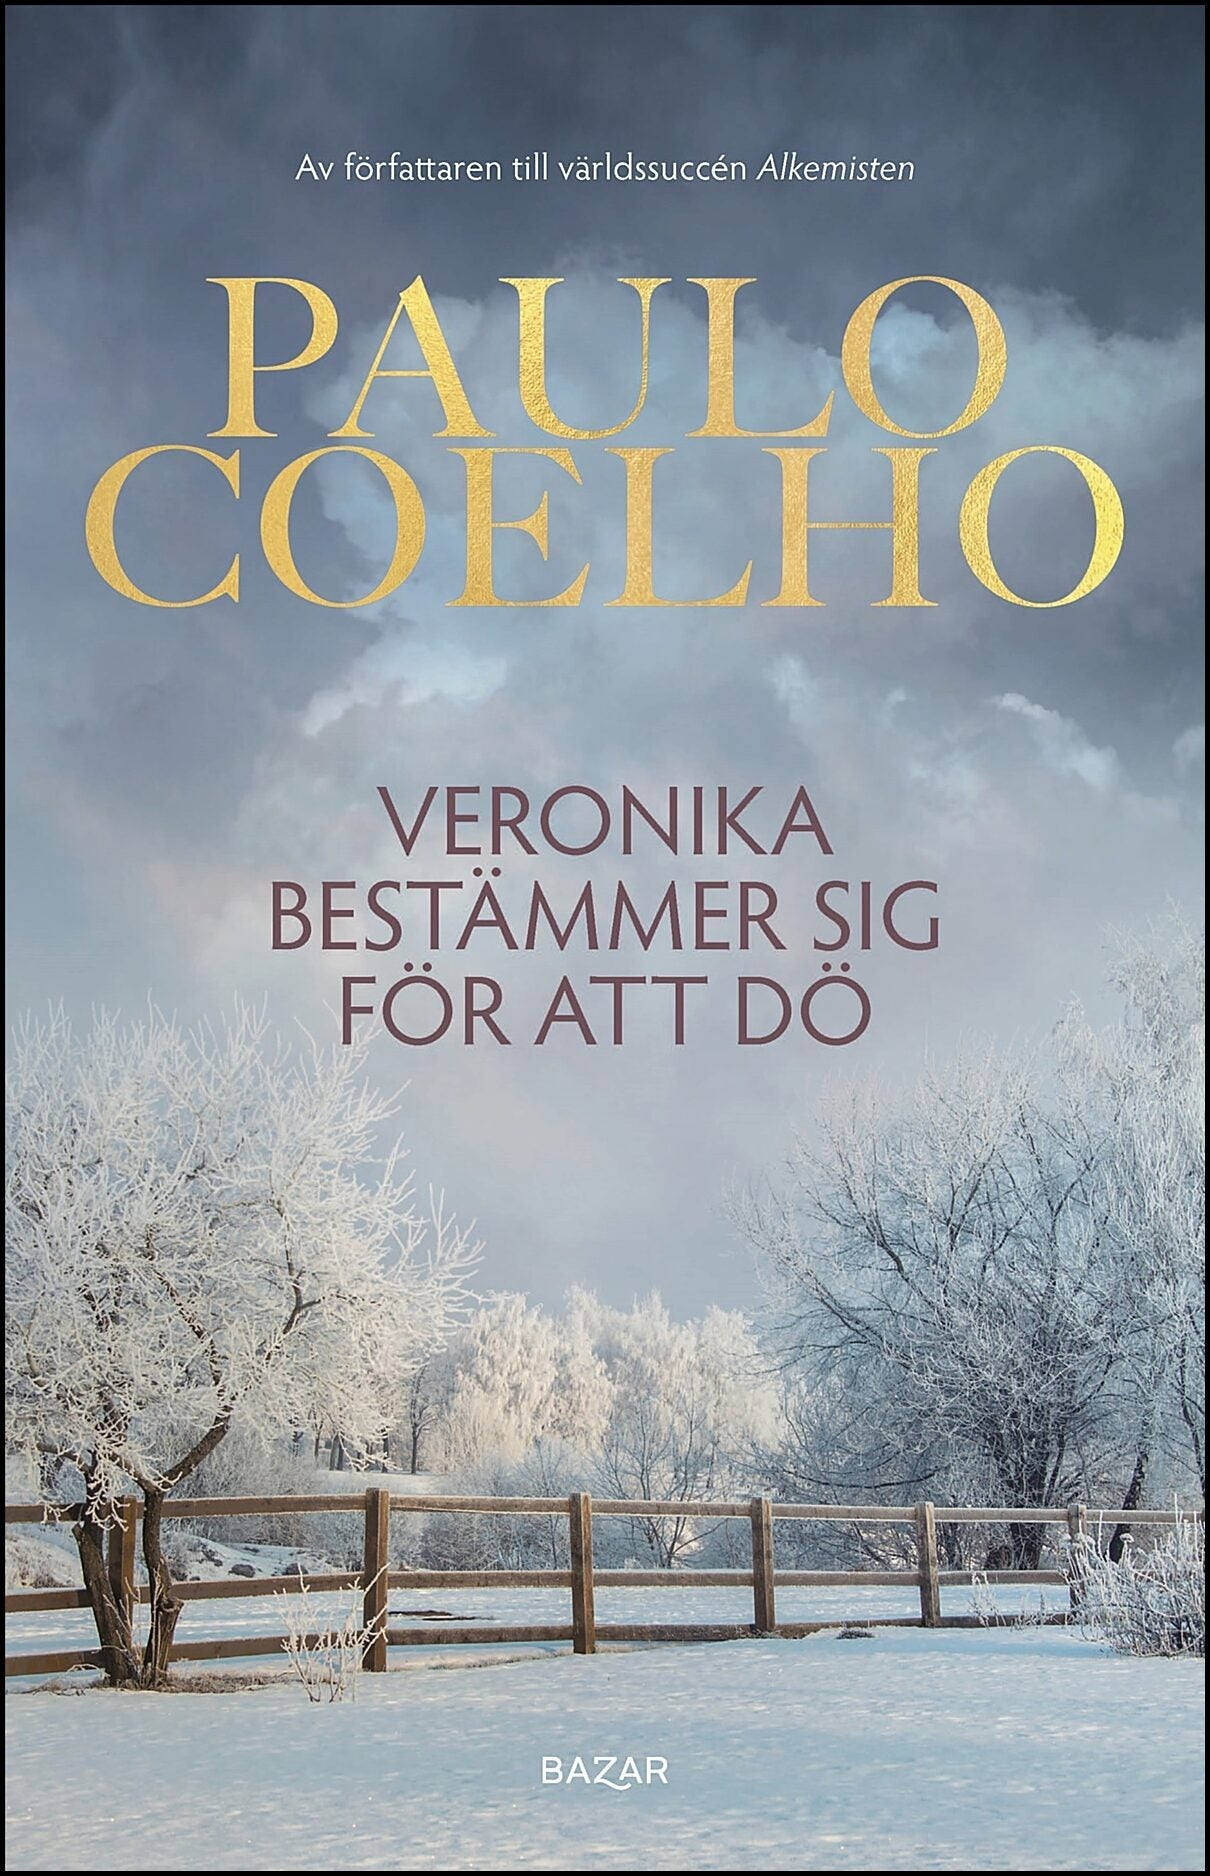 Coelho, Paulo | Veronika bestämmer sig för att dö